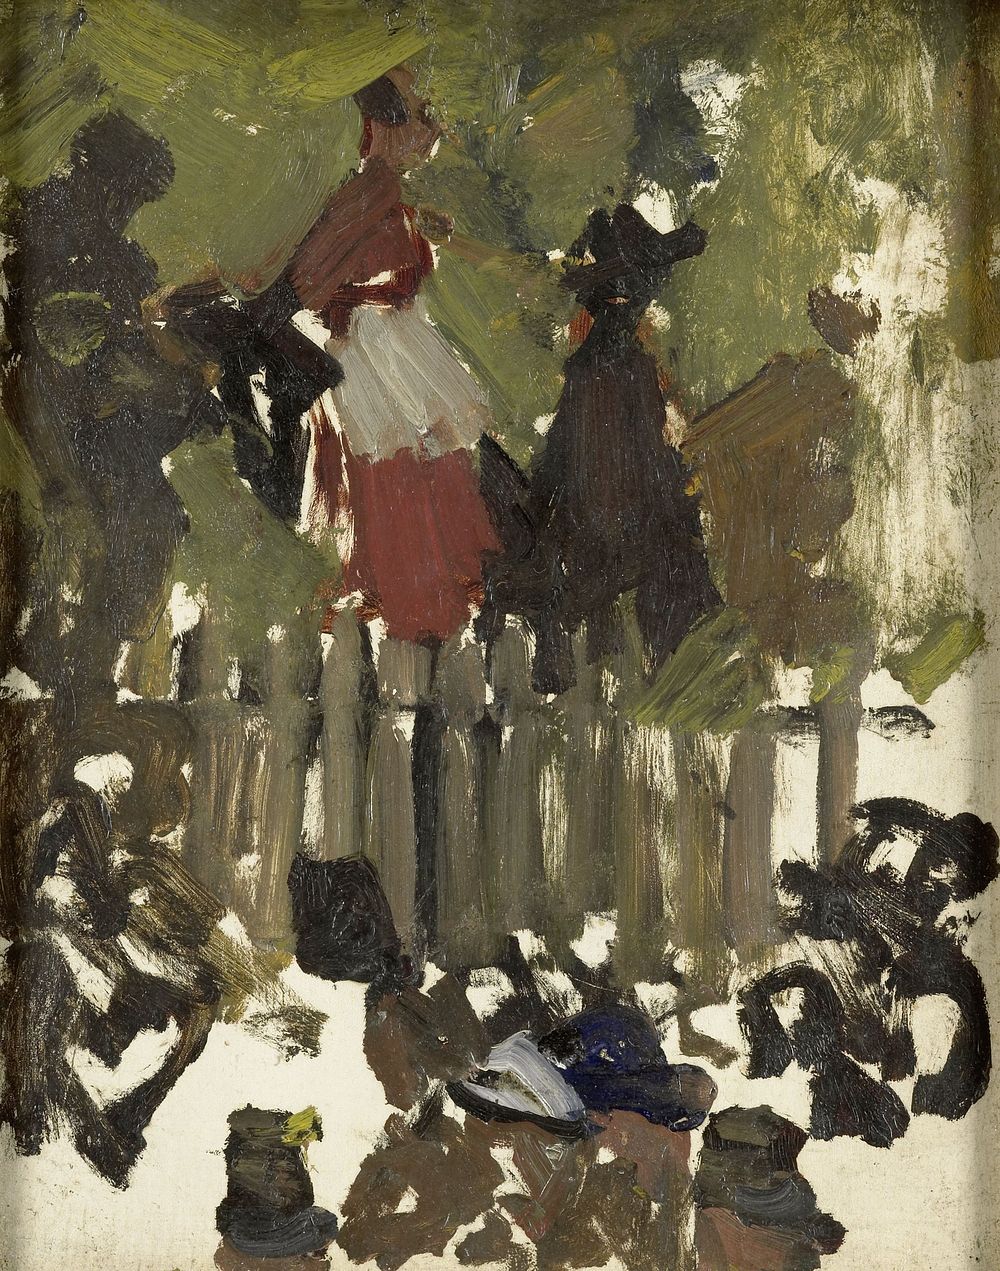 The Funfair (1880 - 1923) by George Hendrik Breitner